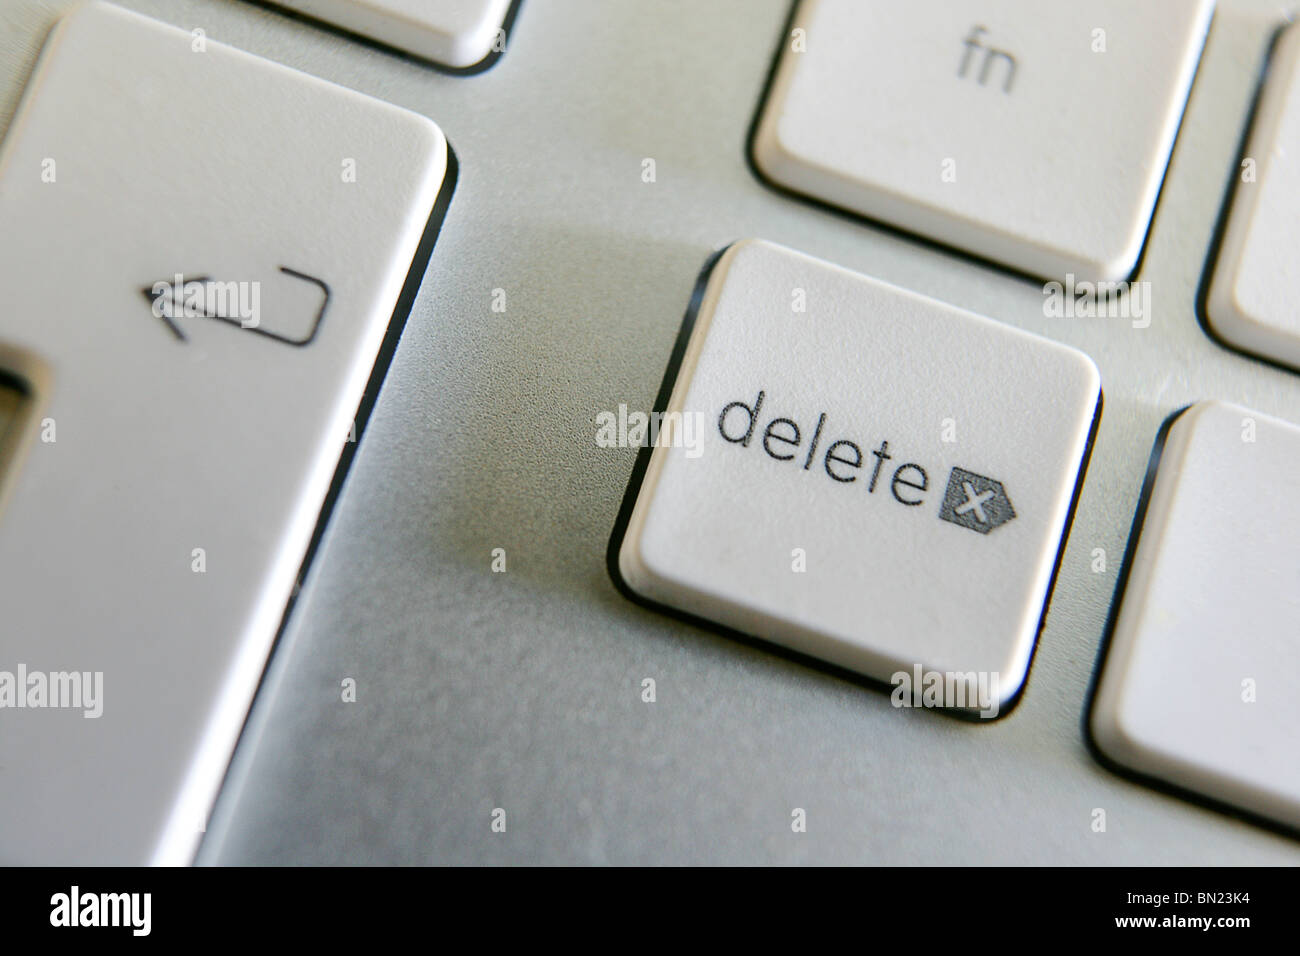 Delete button keyboard -Fotos und -Bildmaterial in hoher Auflösung – Alamy